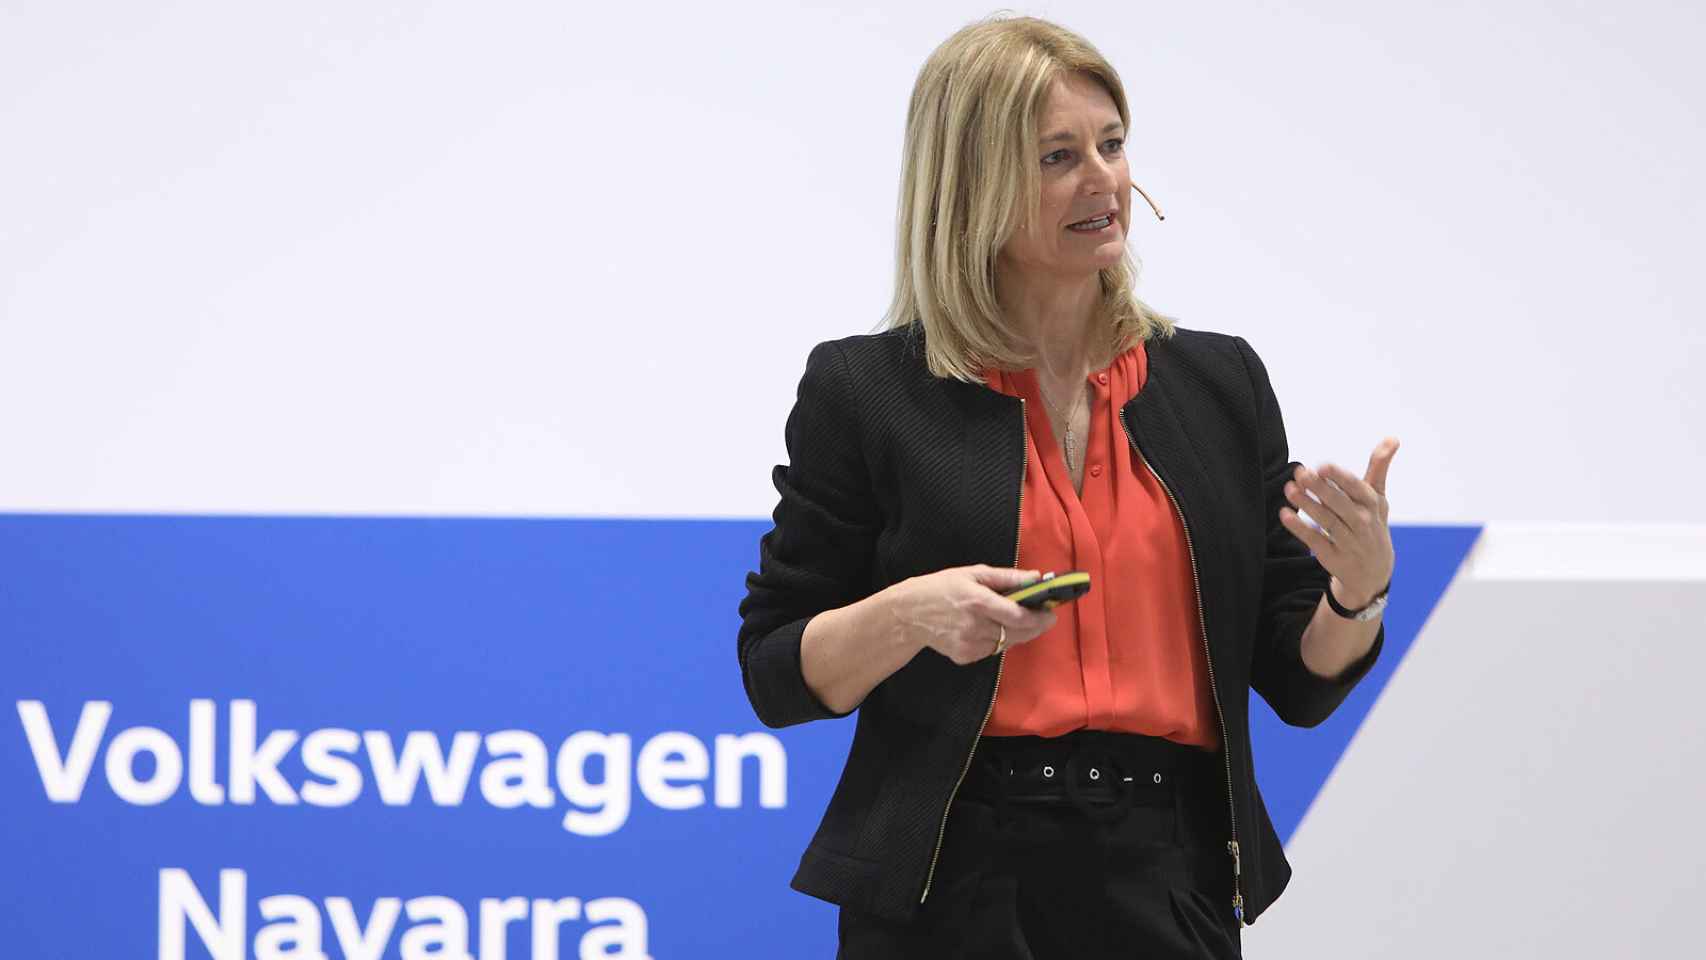 Laura Ros, durante la presentación en la fábrica de Volkswagen en Navarra.